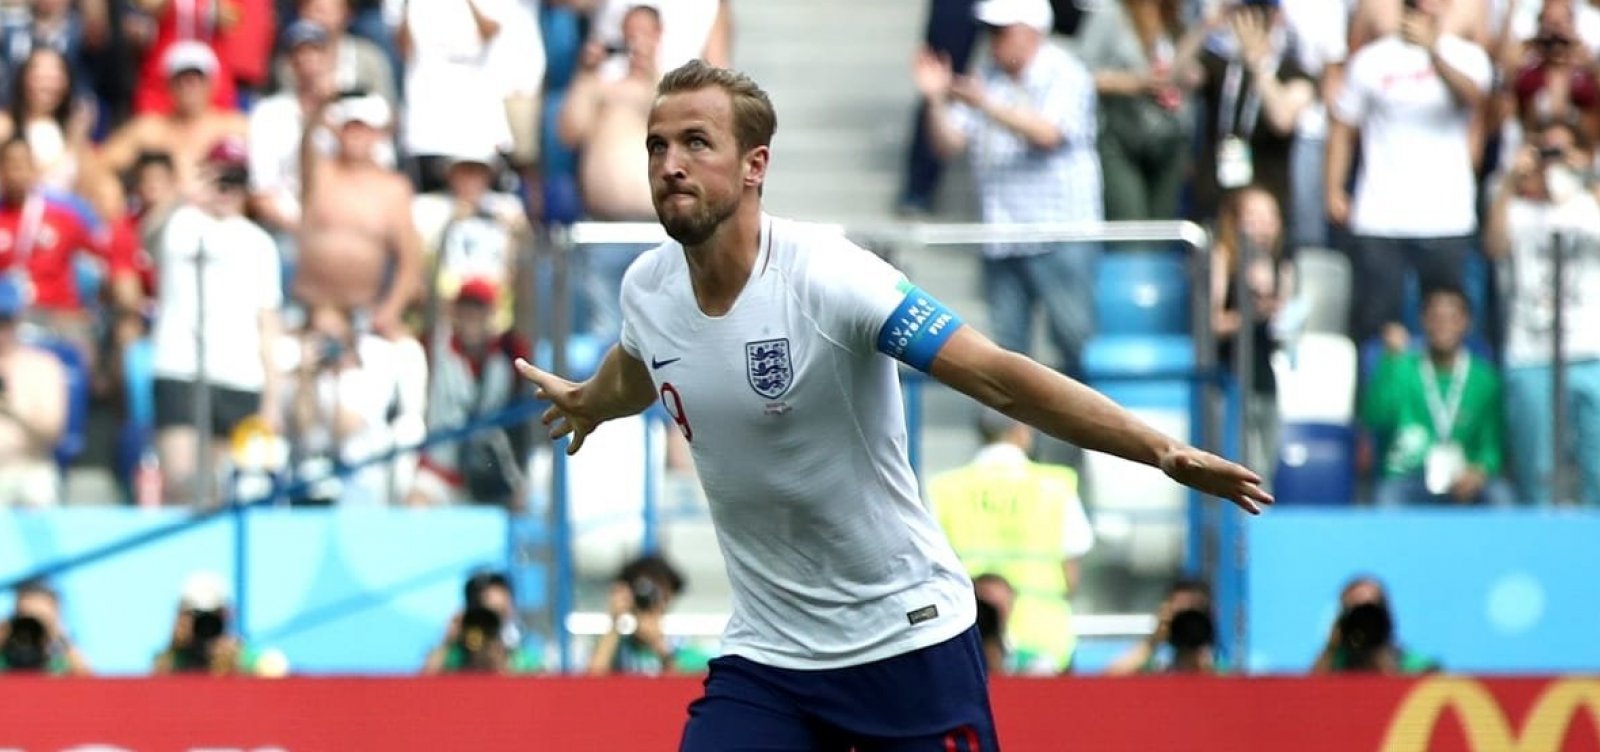 Inglaterra atropela Panamá, garante classificação e vai definir liderança com a Bélgica